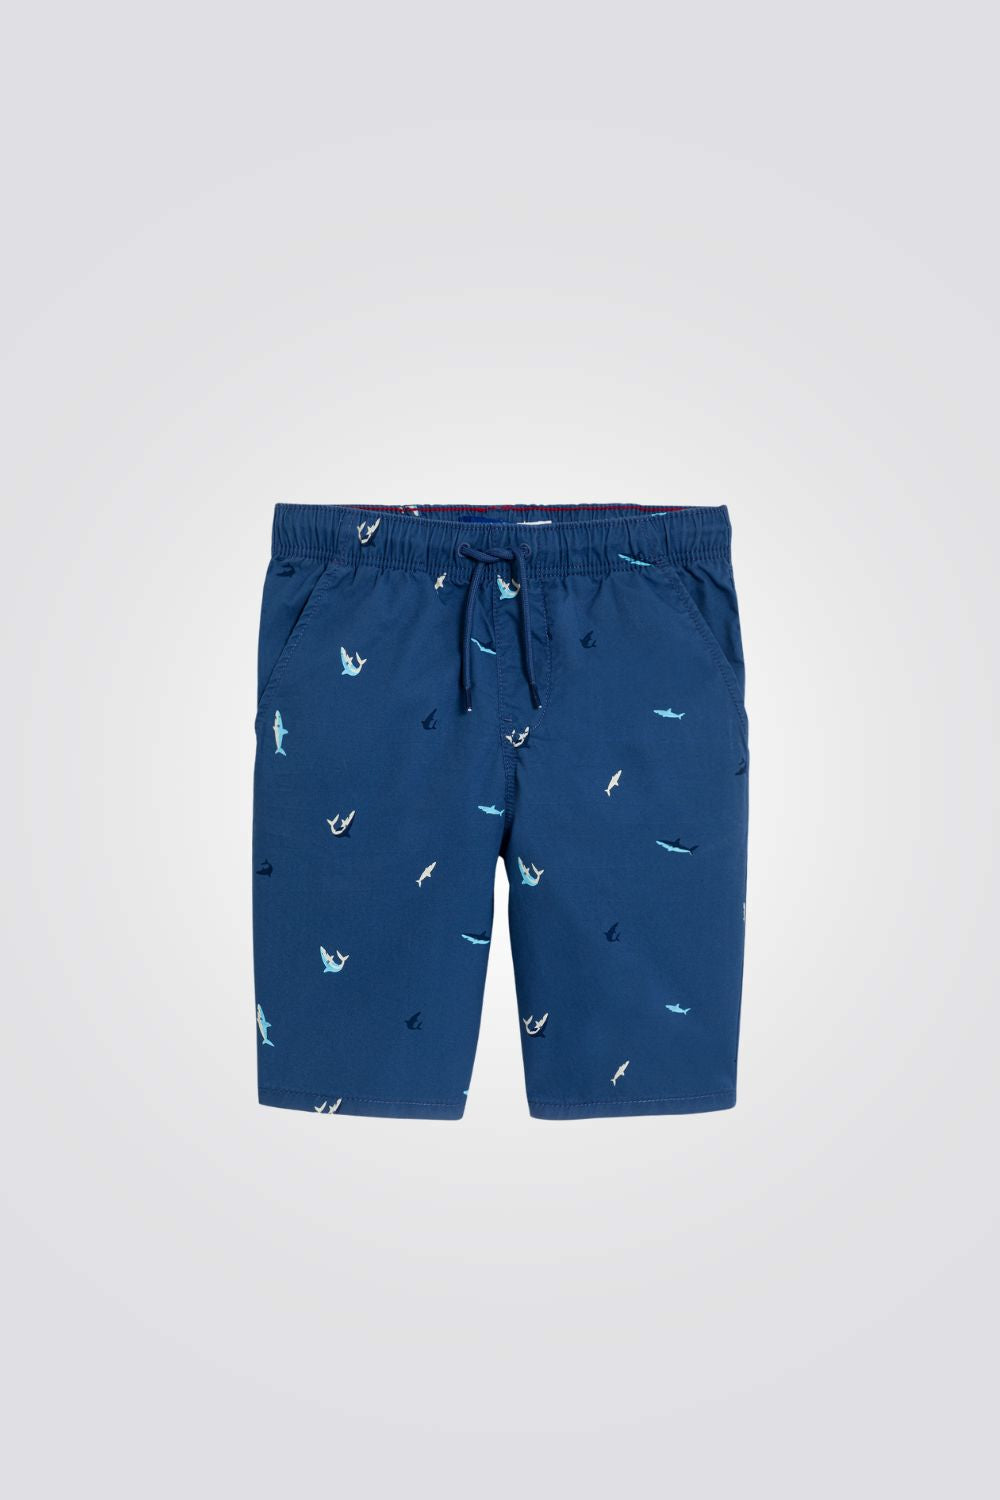 מכנסי ברמודה לילדים בצבע כחול עם הדפס כרישים